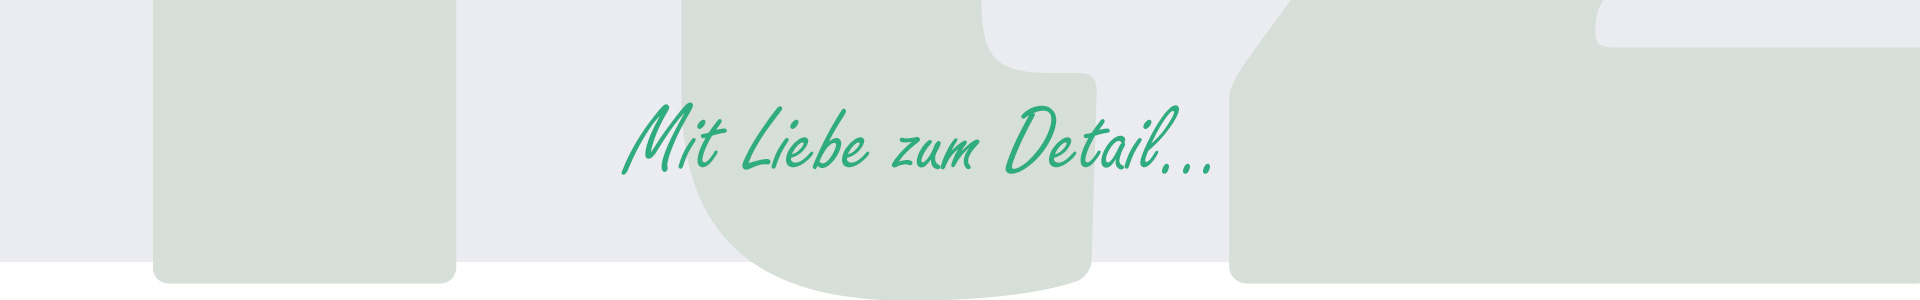 Gute Website erstellen - Webdesign Agentur Düsseldorf